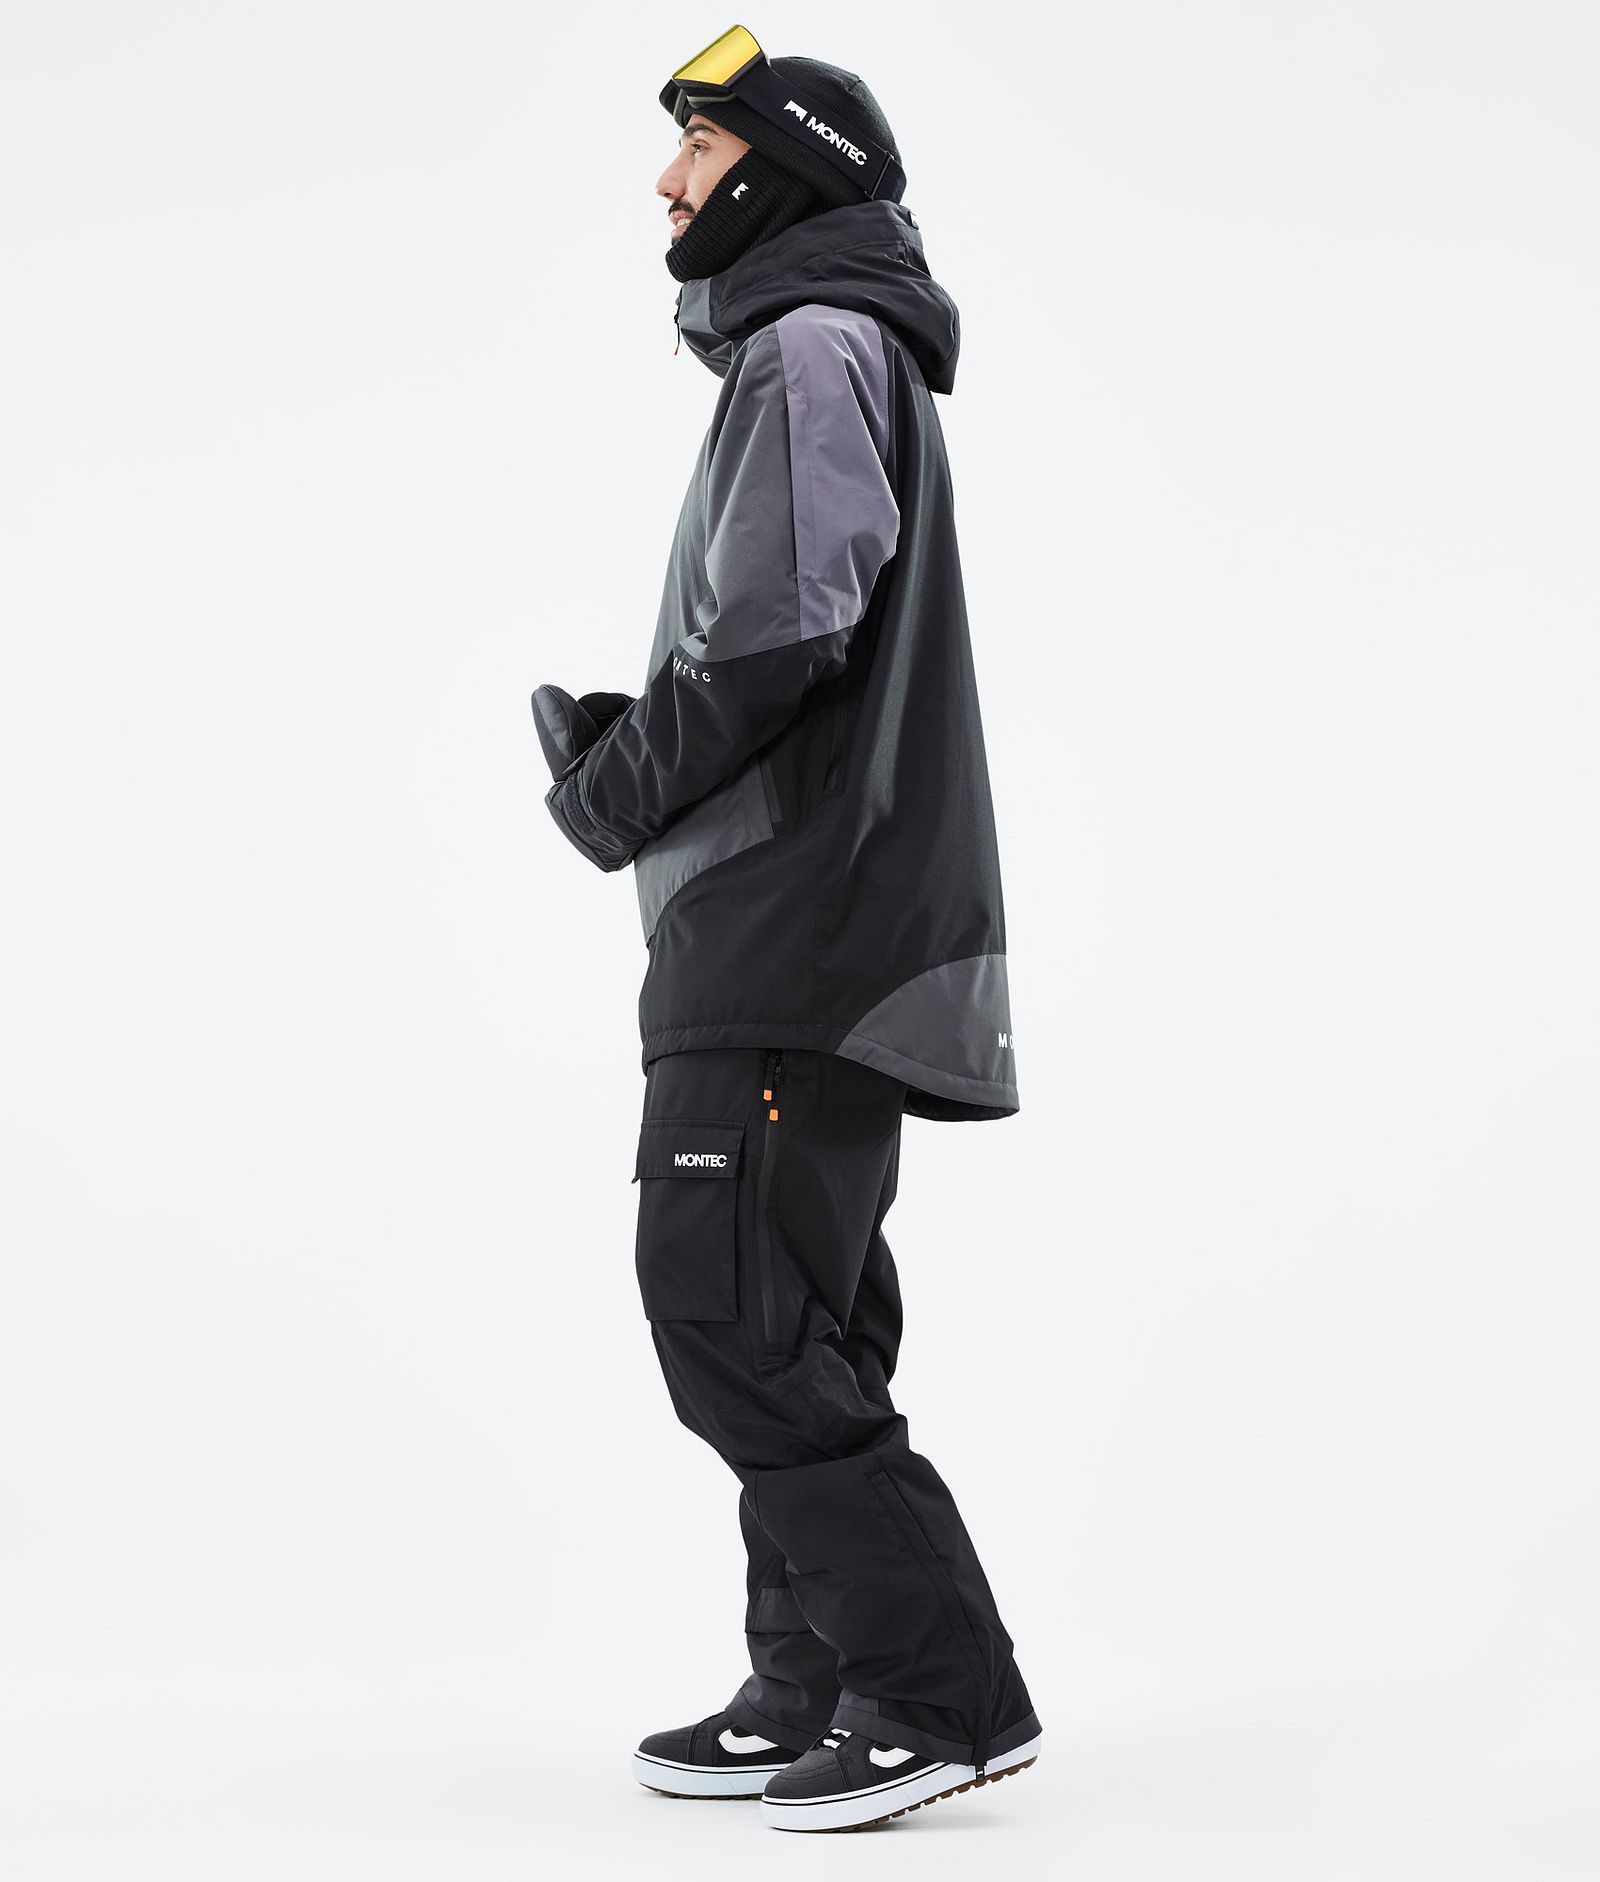 Montec Apex Kurtka Snowboardowa Mężczyźni Phantom/Black/Pearl